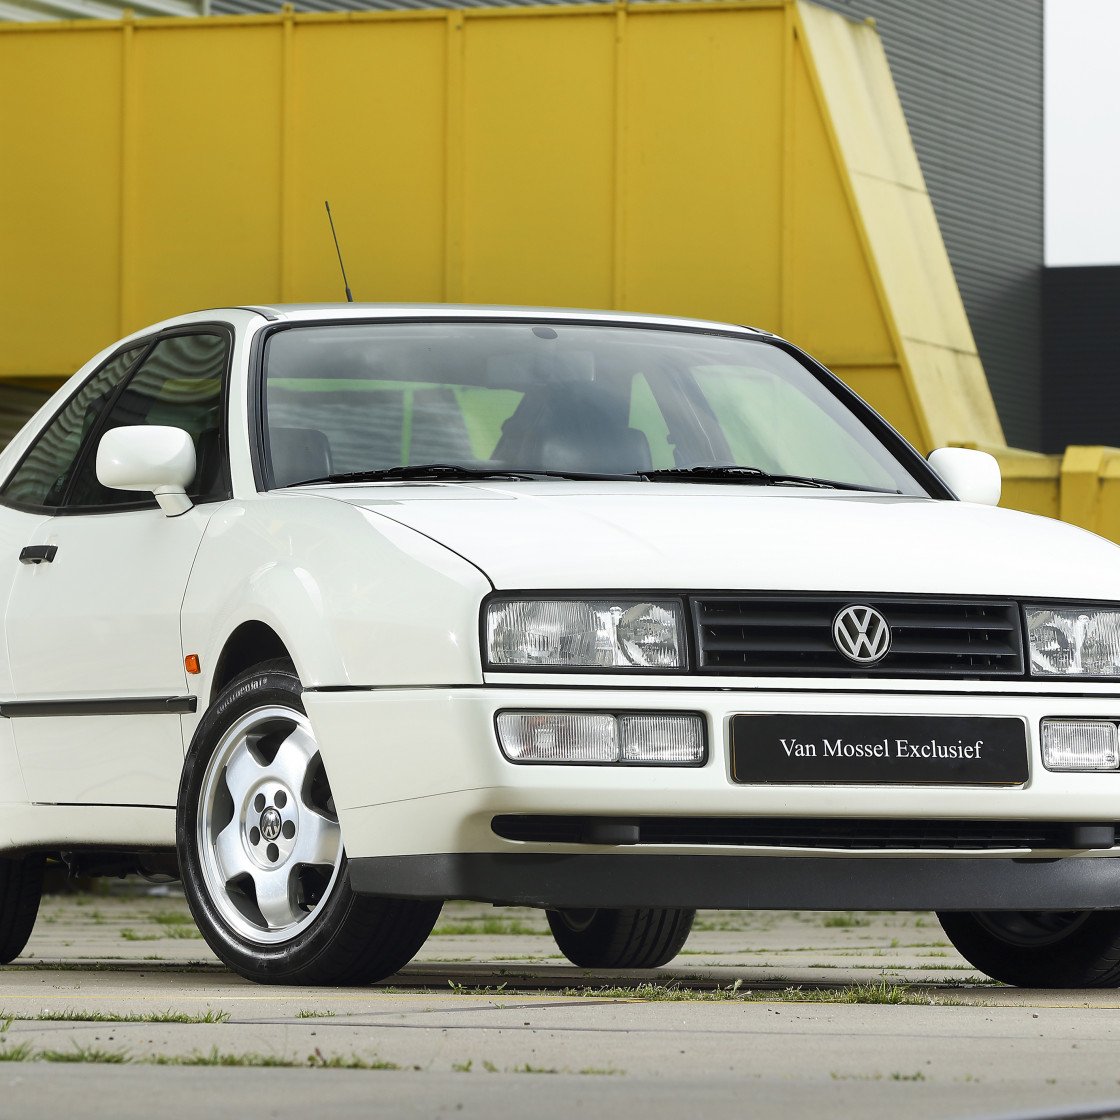 Volkswagen Corrado hero